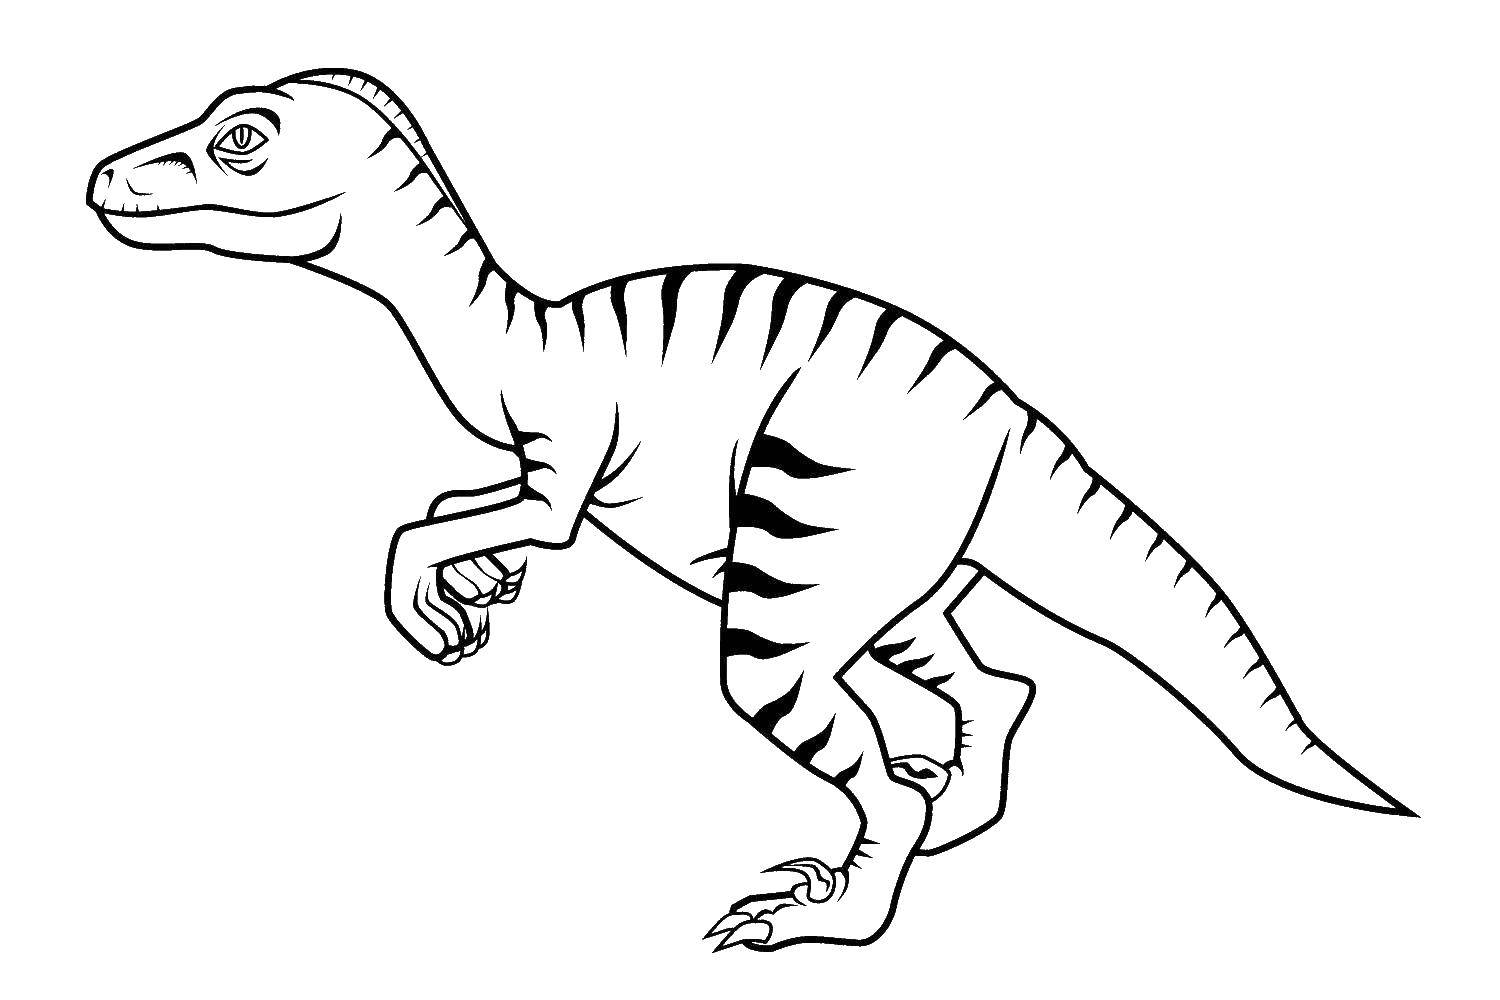 Coloring Dinosaur. Category dinosaur. Tags:  Dinosaurs.